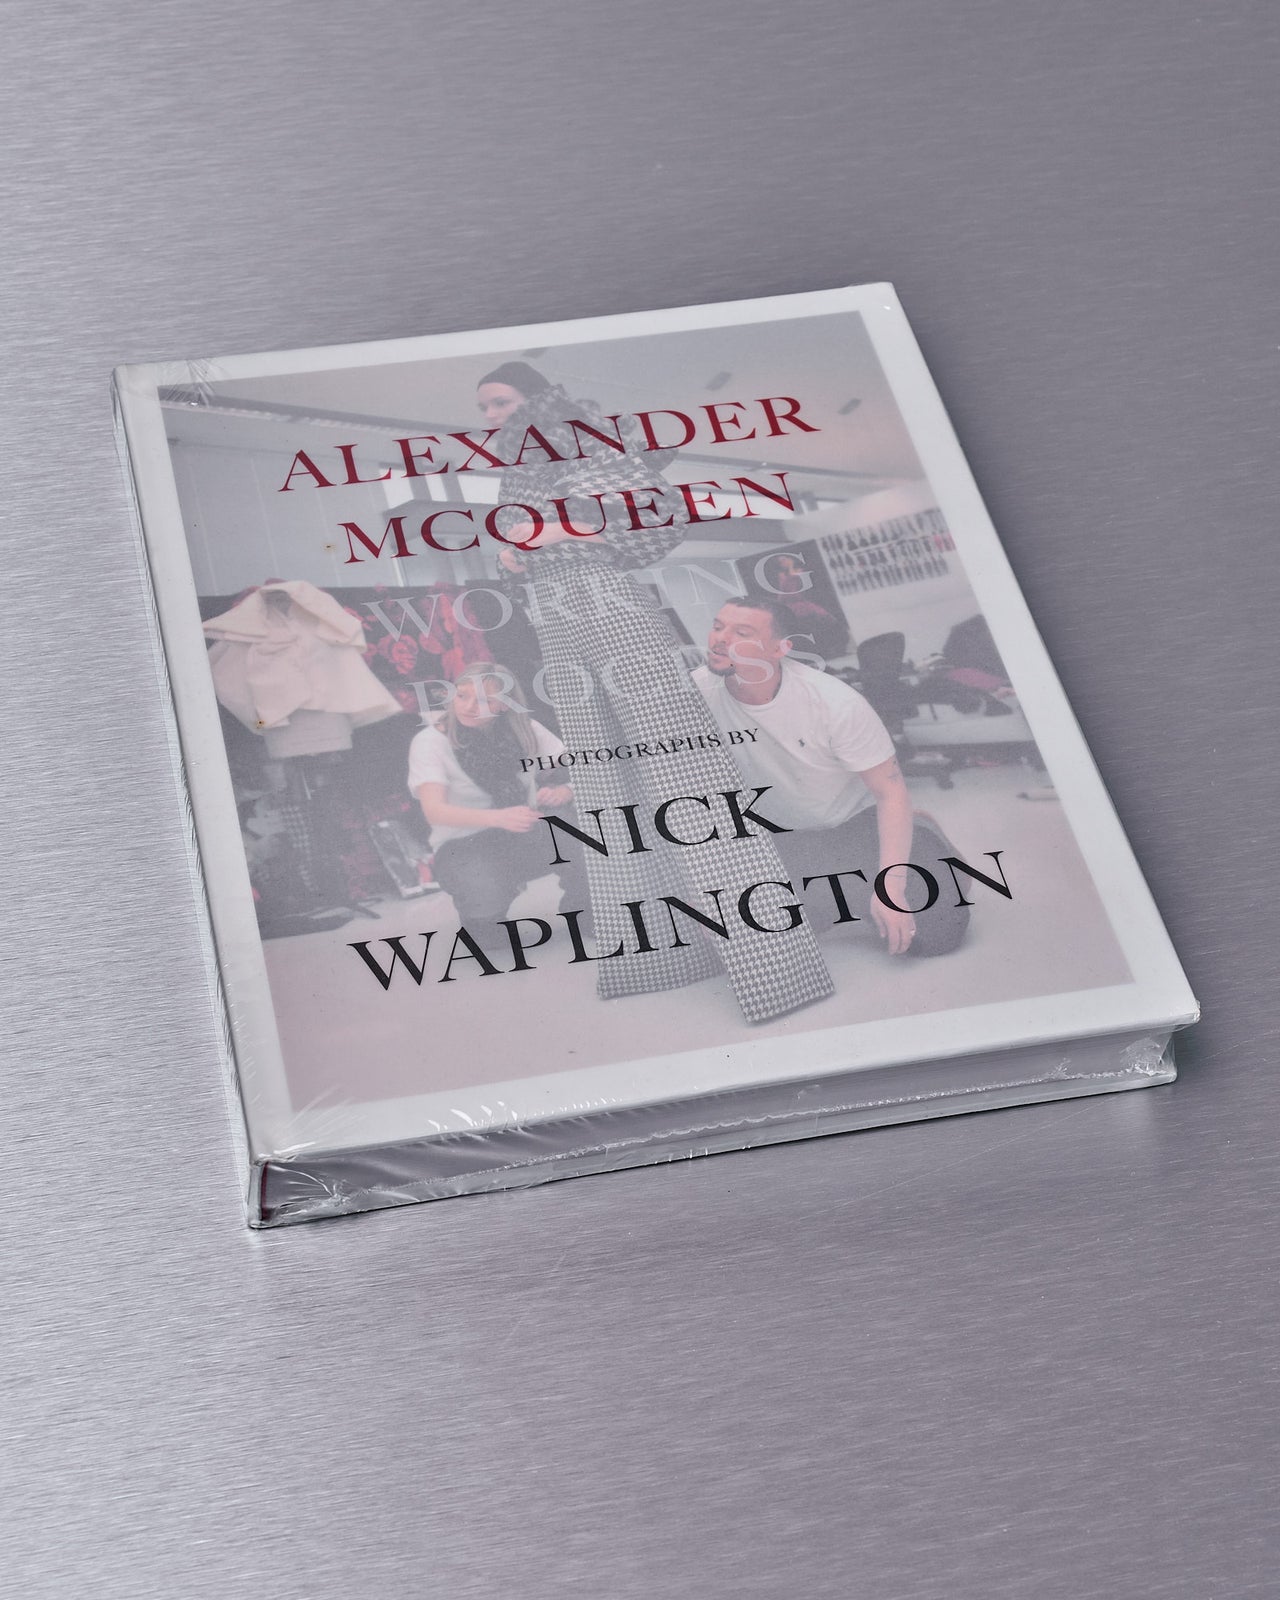 Alexander Mcqueen Working Process: Photographs by Nick Waplington [1st Edition]